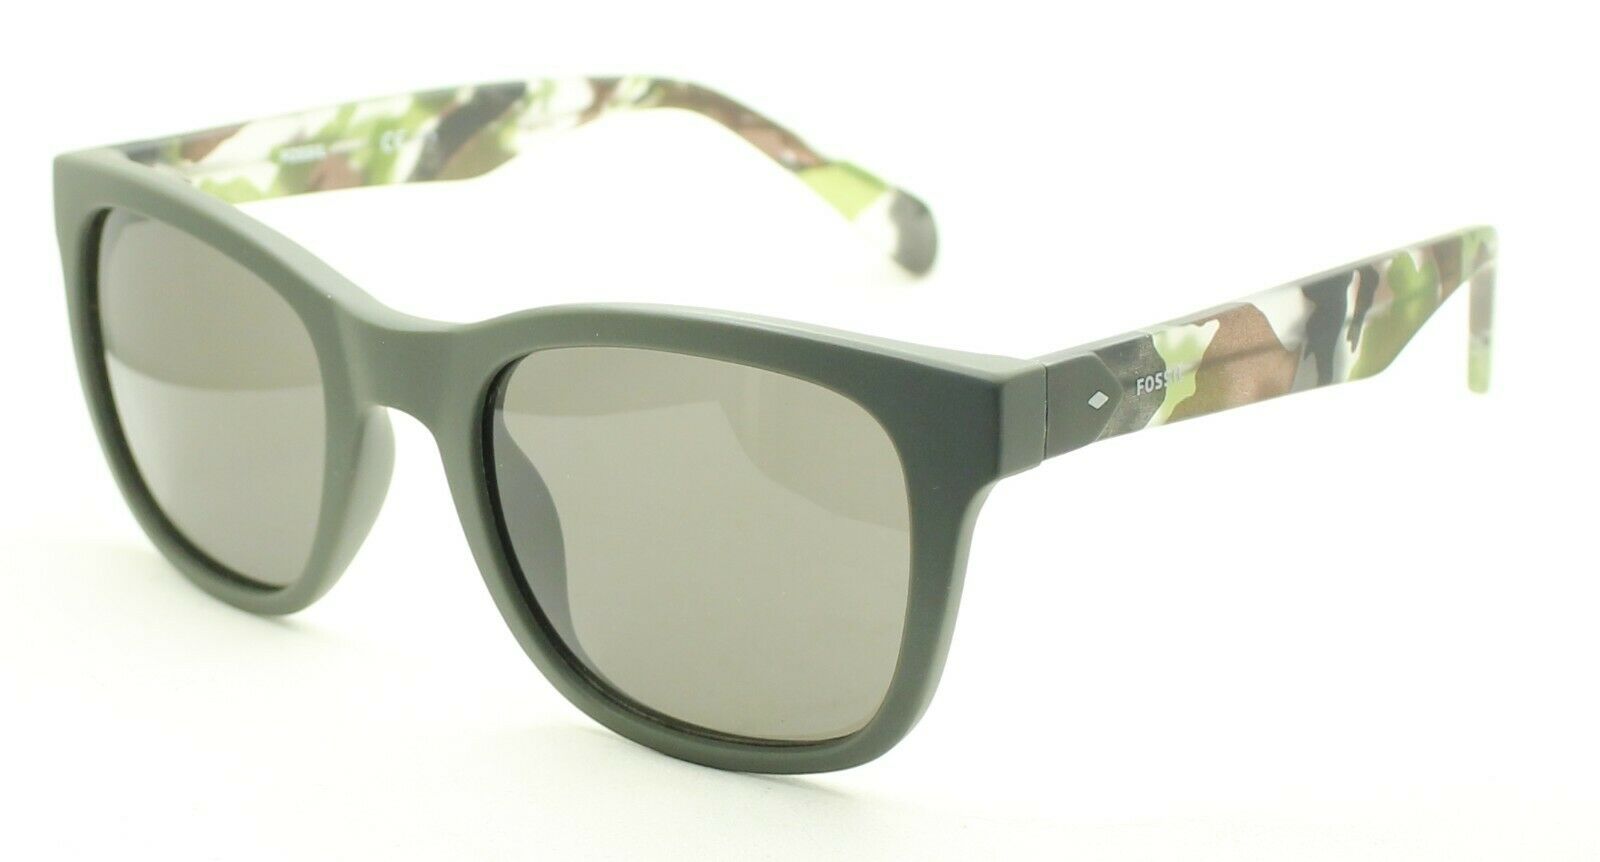 FOSSIL FOS 3067/S DLDIR 52mm Sunglasses Shades Eyewear Frames - BNIB New